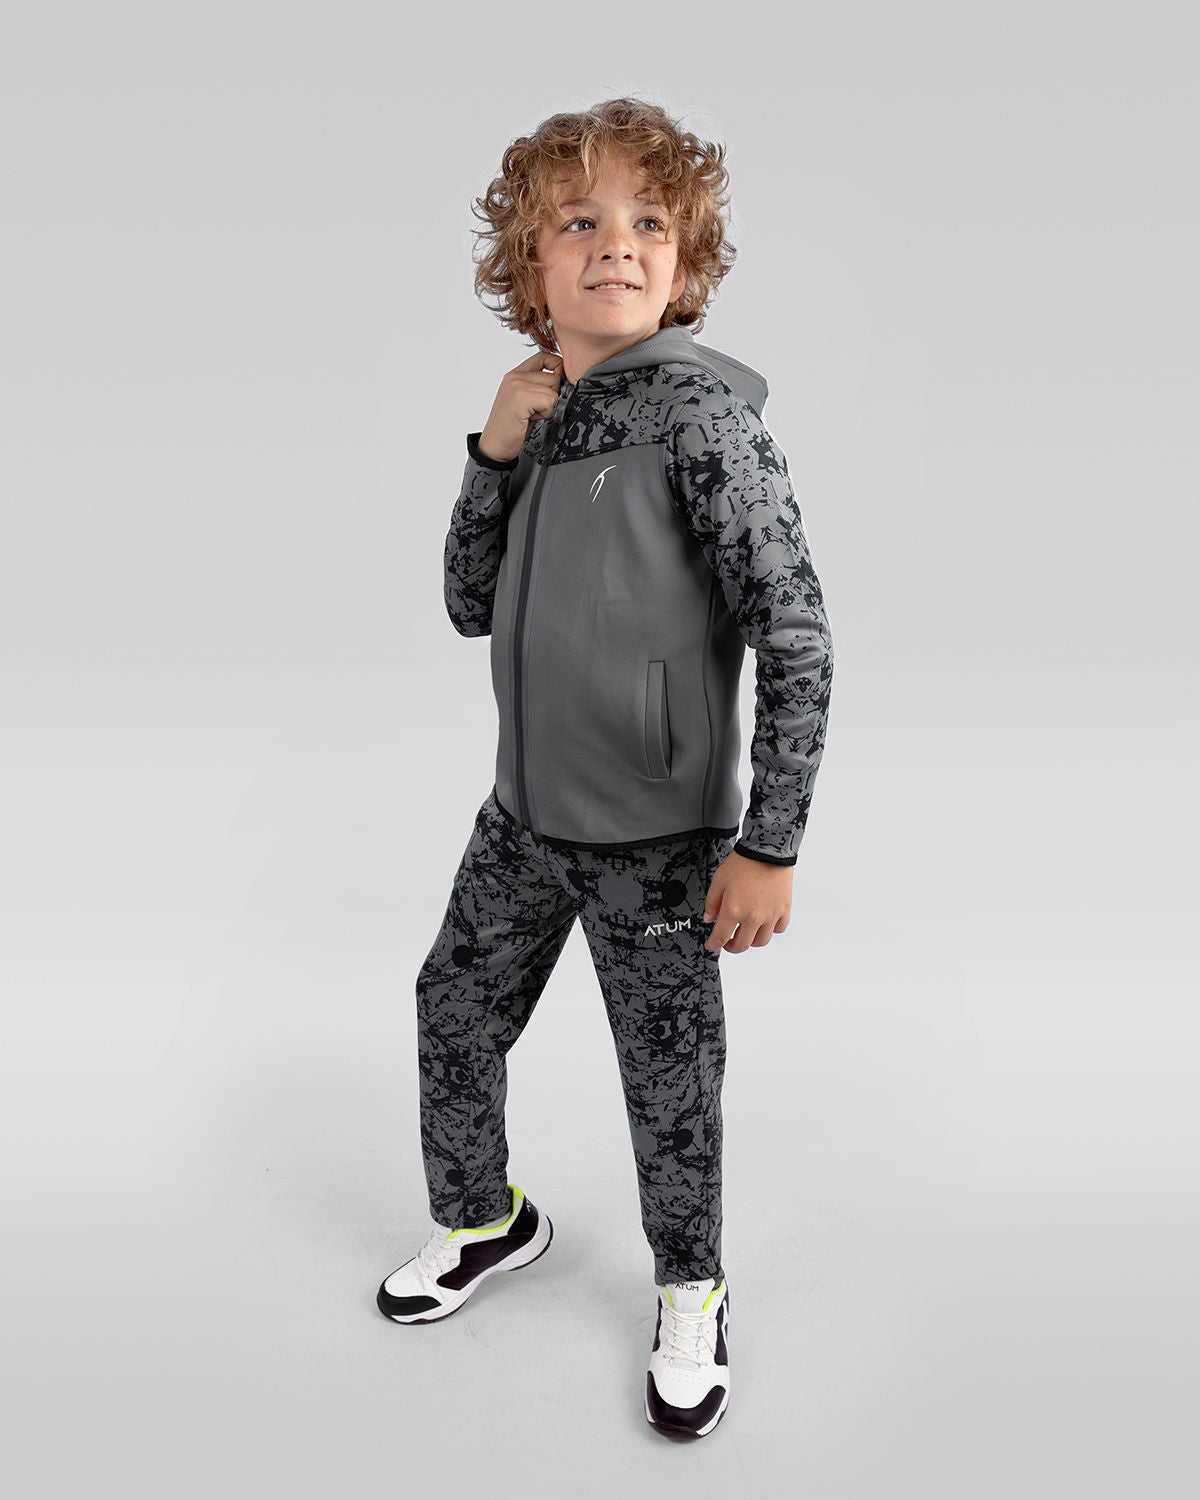 Photo by ð—”ð—§ð—¨ð— SPORTSWEAR Â® on December 20, 2022. May be an image of 1 boy wearing a gray printed sweatpants, gray jacket, and white shoes.